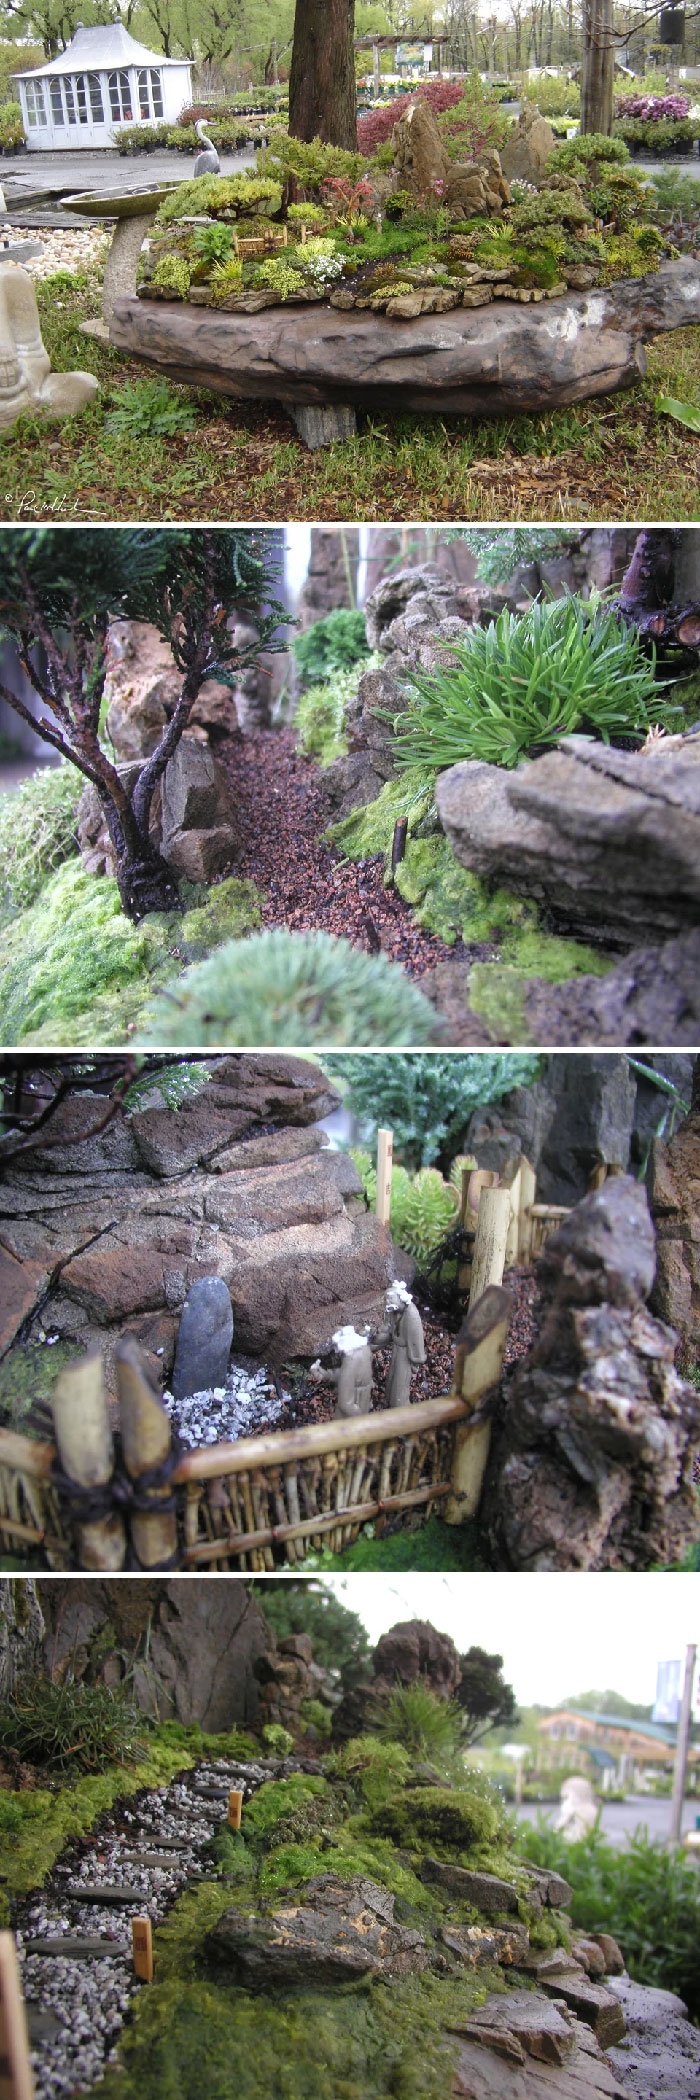 Este es un jardín de hadas para niños que planté hace unos años. Vive en una roca de 1,5 metros, tiene una variedad de árboles de hoja perenne y caducifolios y plantas de cobertura, musgos y suculentas. Es un ecosistema vivo en miniatura y es el hogar de abejas, pájaros, mariposas, escarabajos y hadas